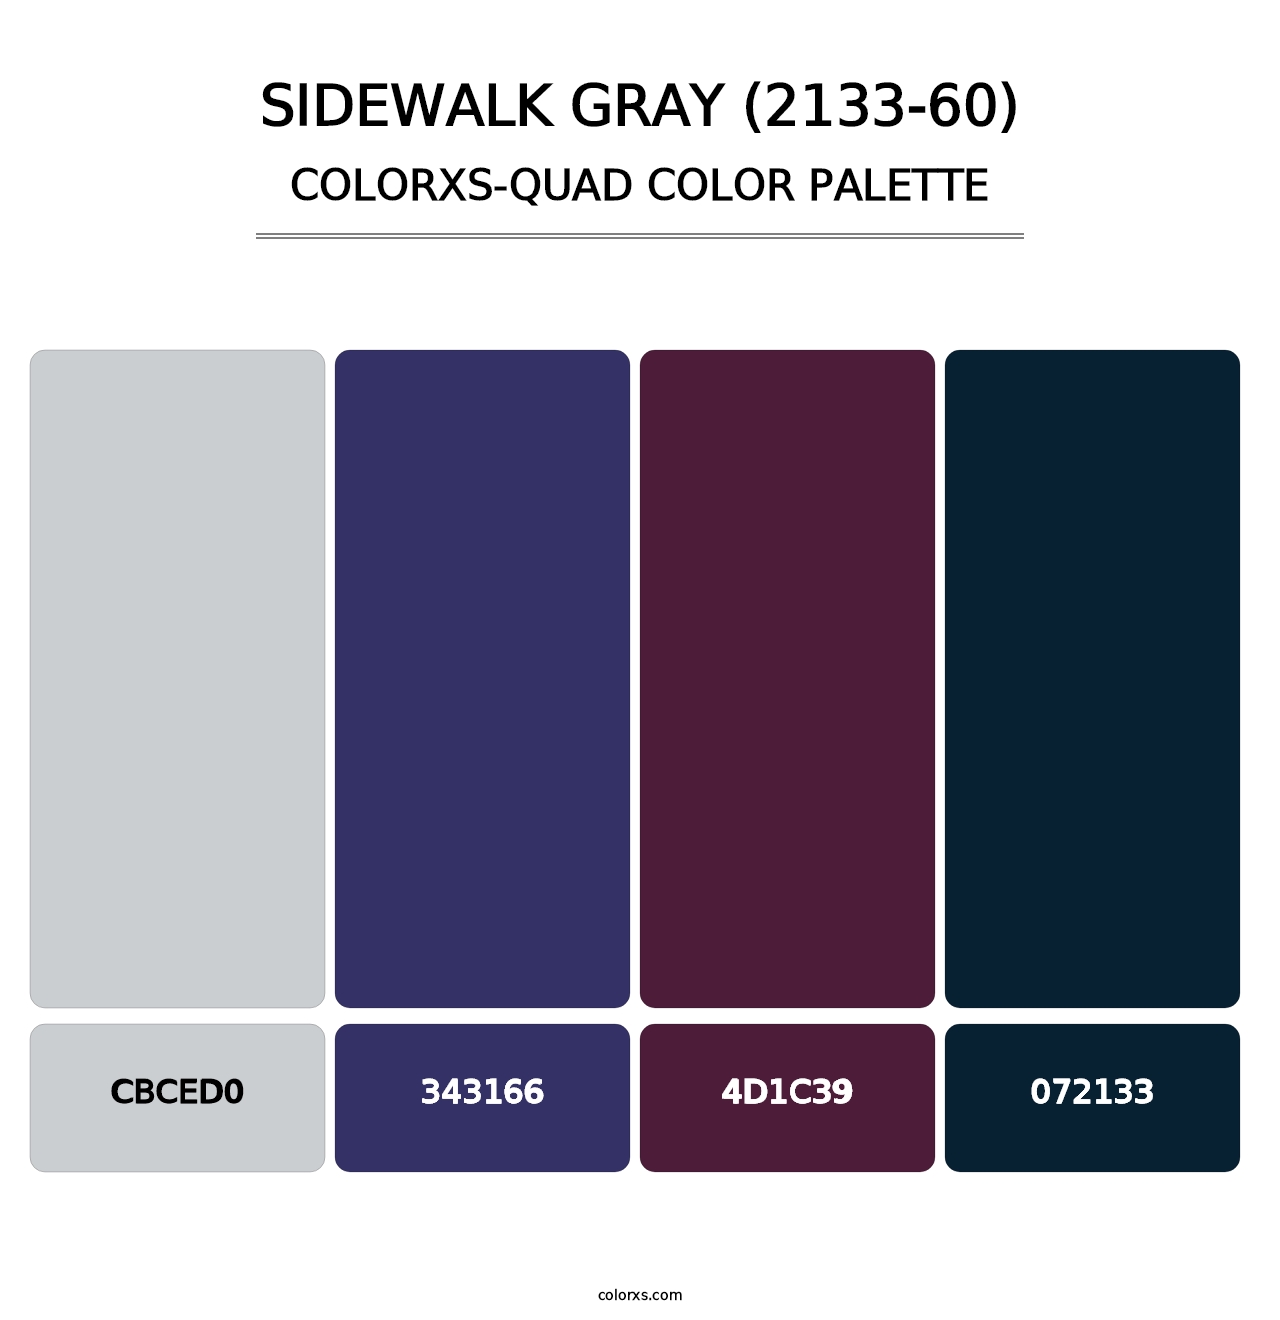 Sidewalk Gray (2133-60) - Colorxs Quad Palette